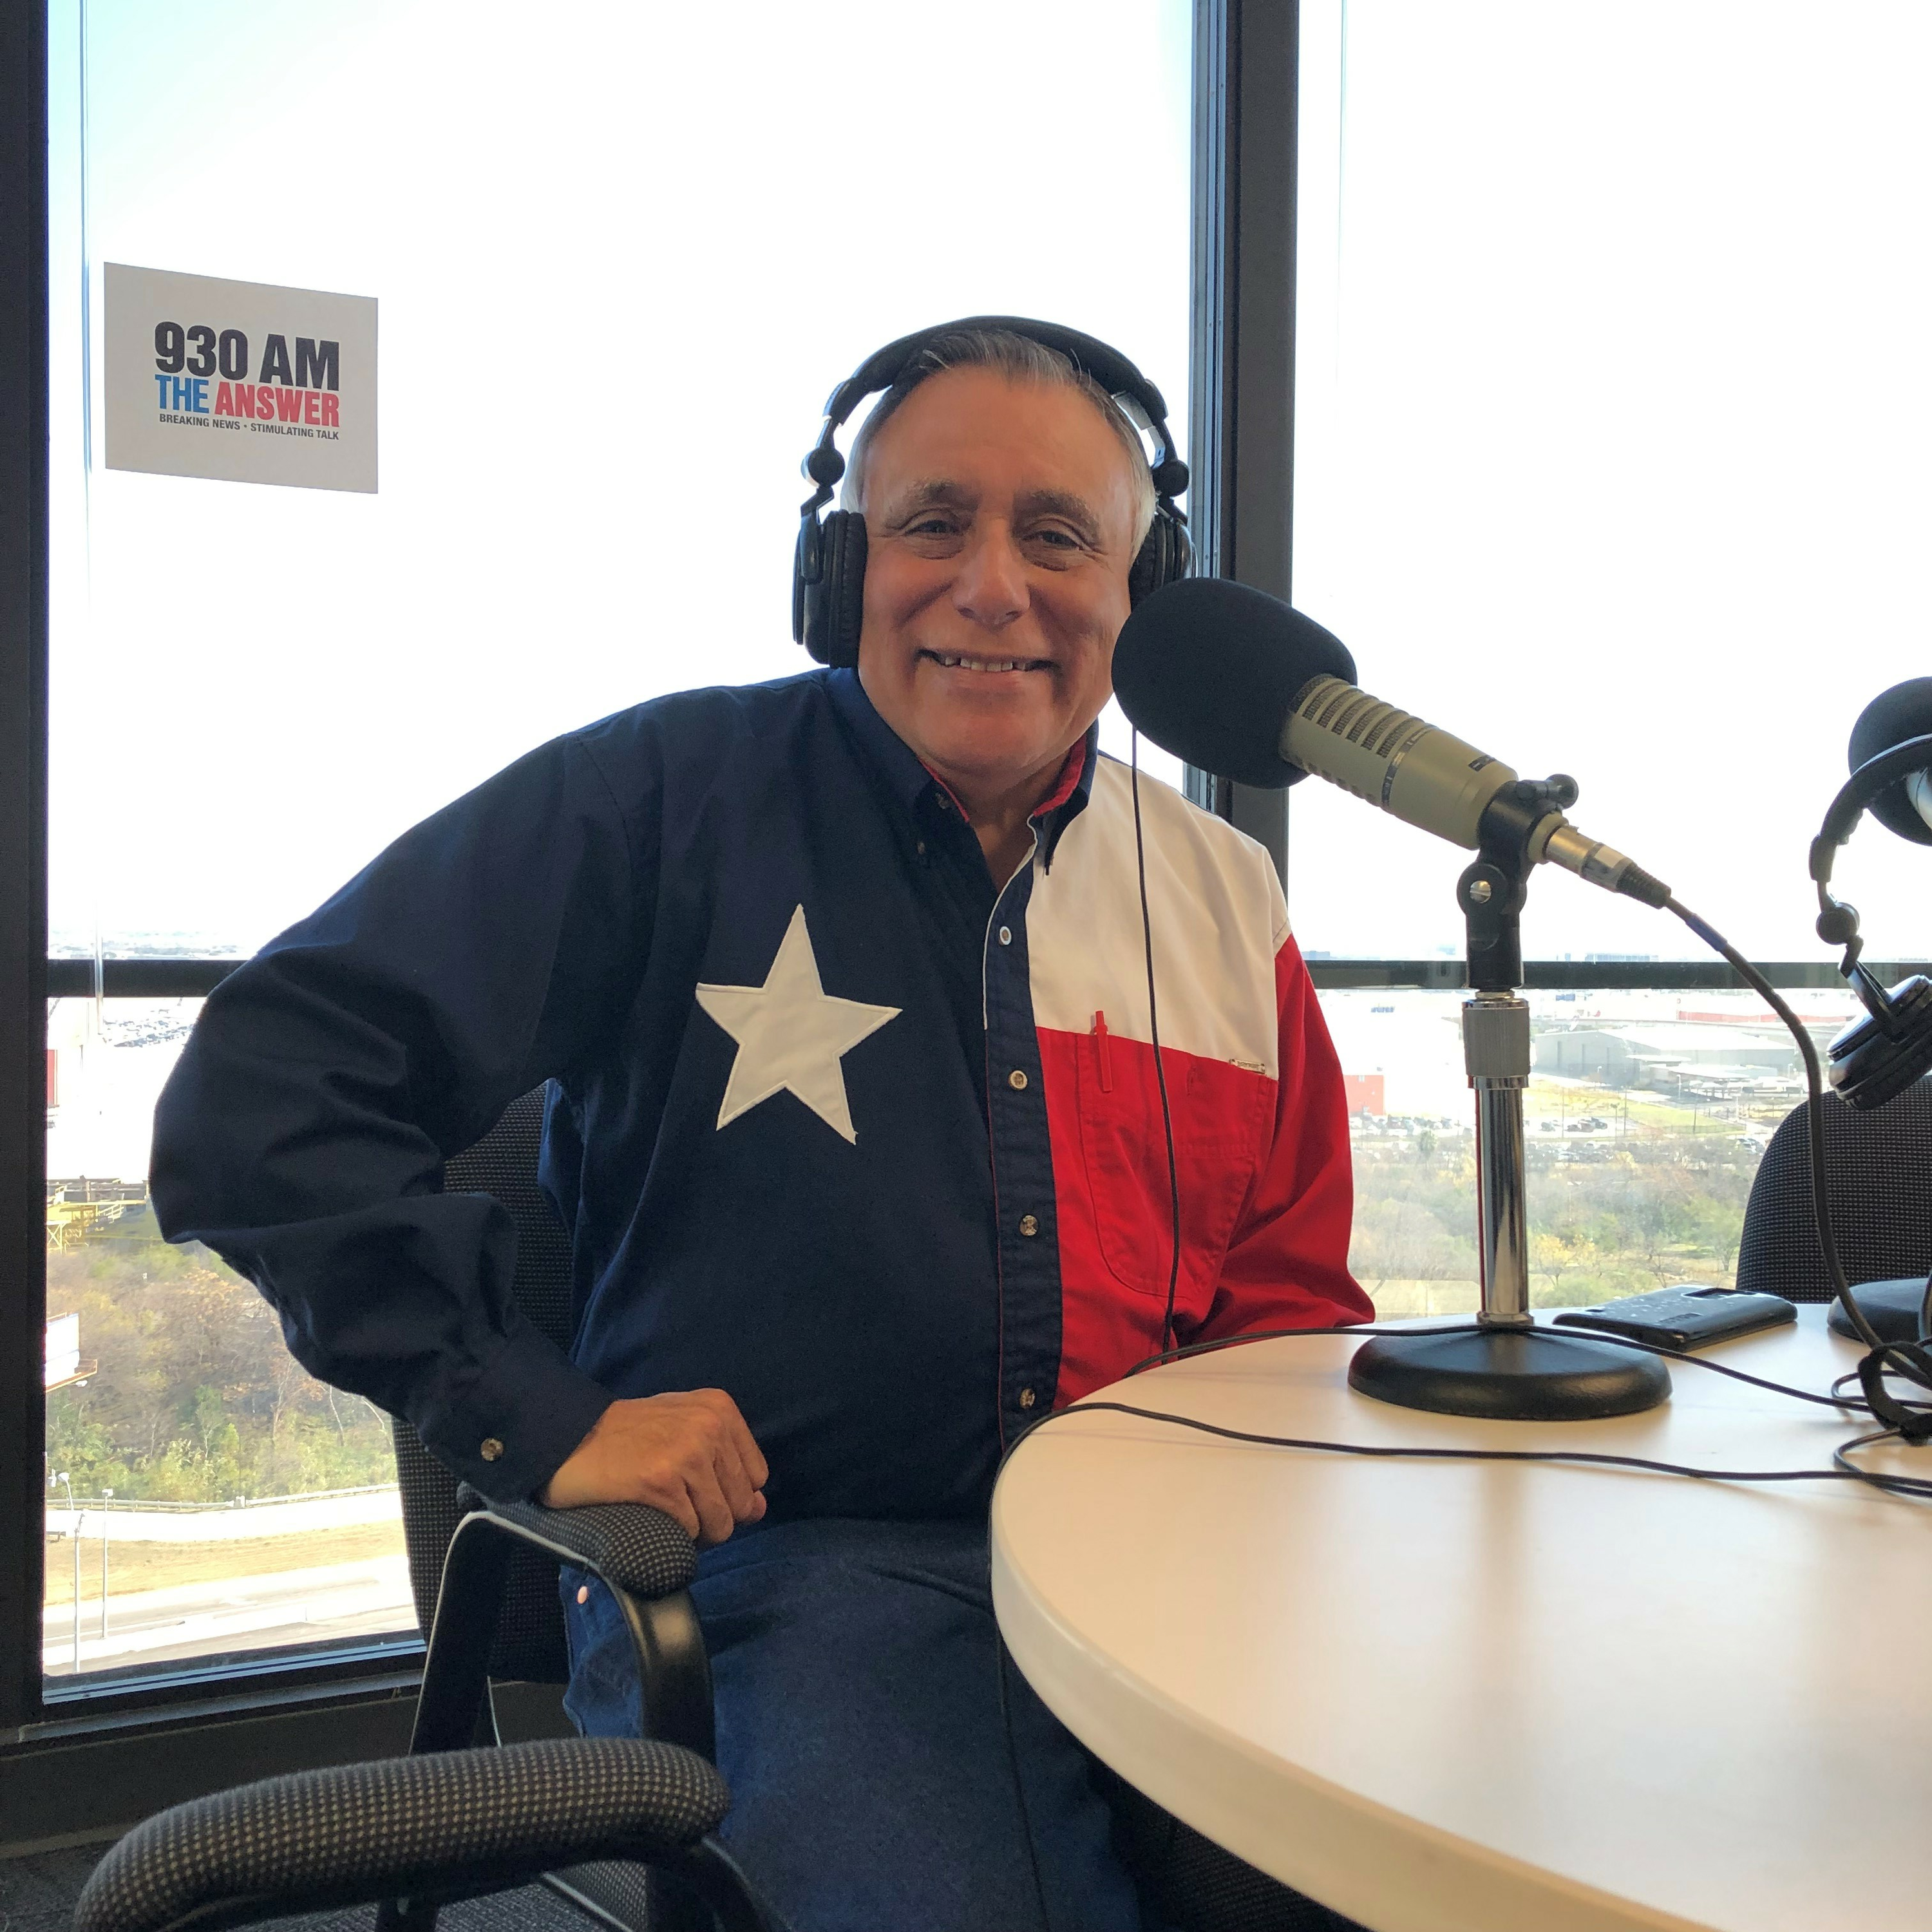 3-26-22 The El Conservador Radio with George Rodriguez